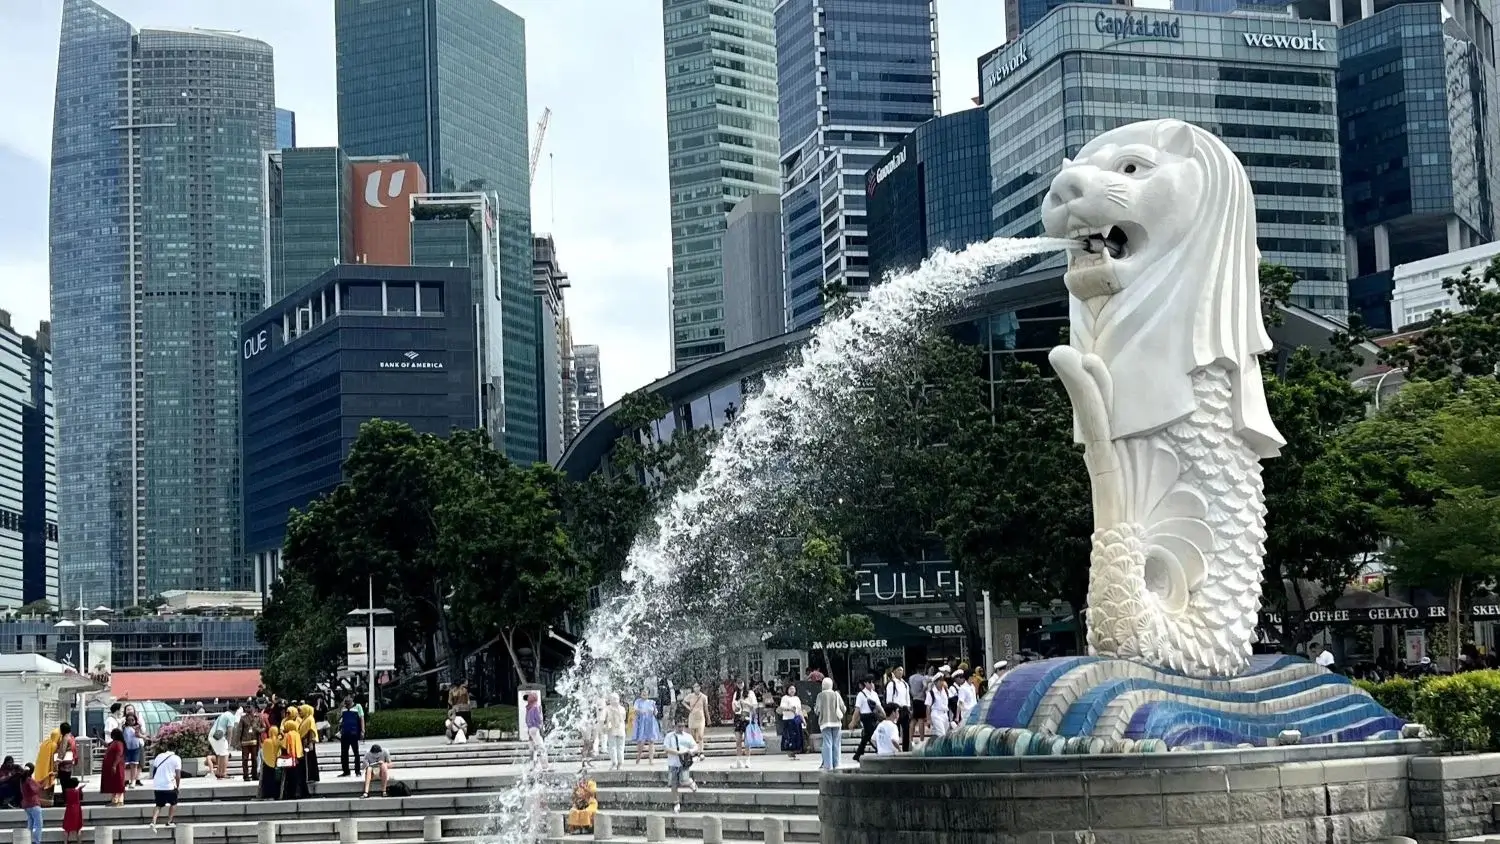 10 melhores hotéis em Singapura – Opções mais bem avaliadas na cidade